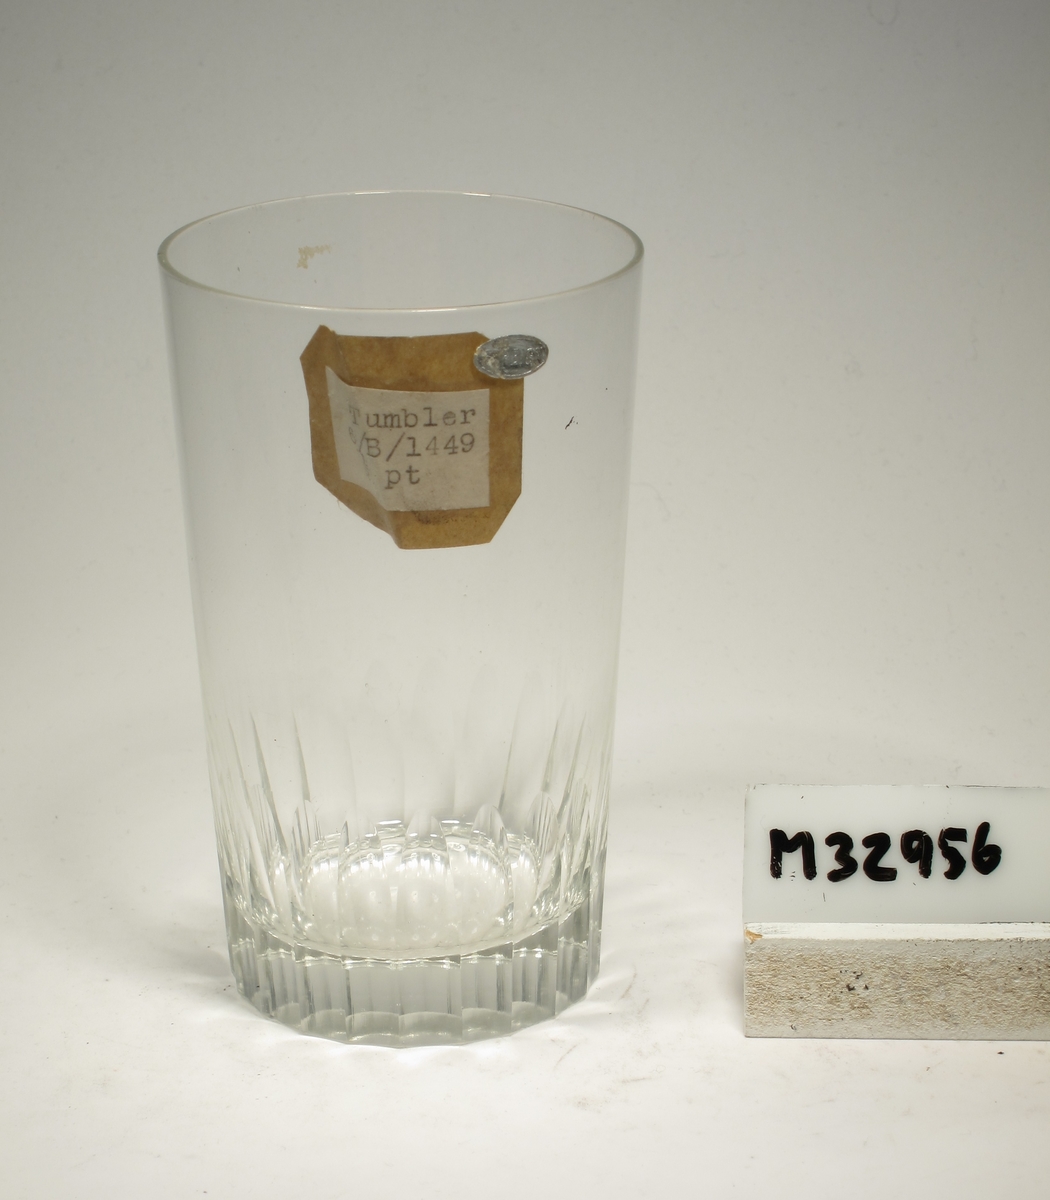 Cylindriskt glas med slipade stående oliver på nedre delen.
Lapp: "Tumbler
6/ B/1449
½ pt"
Etikett: Oval silverfärgad präglad text: "FREIGN"